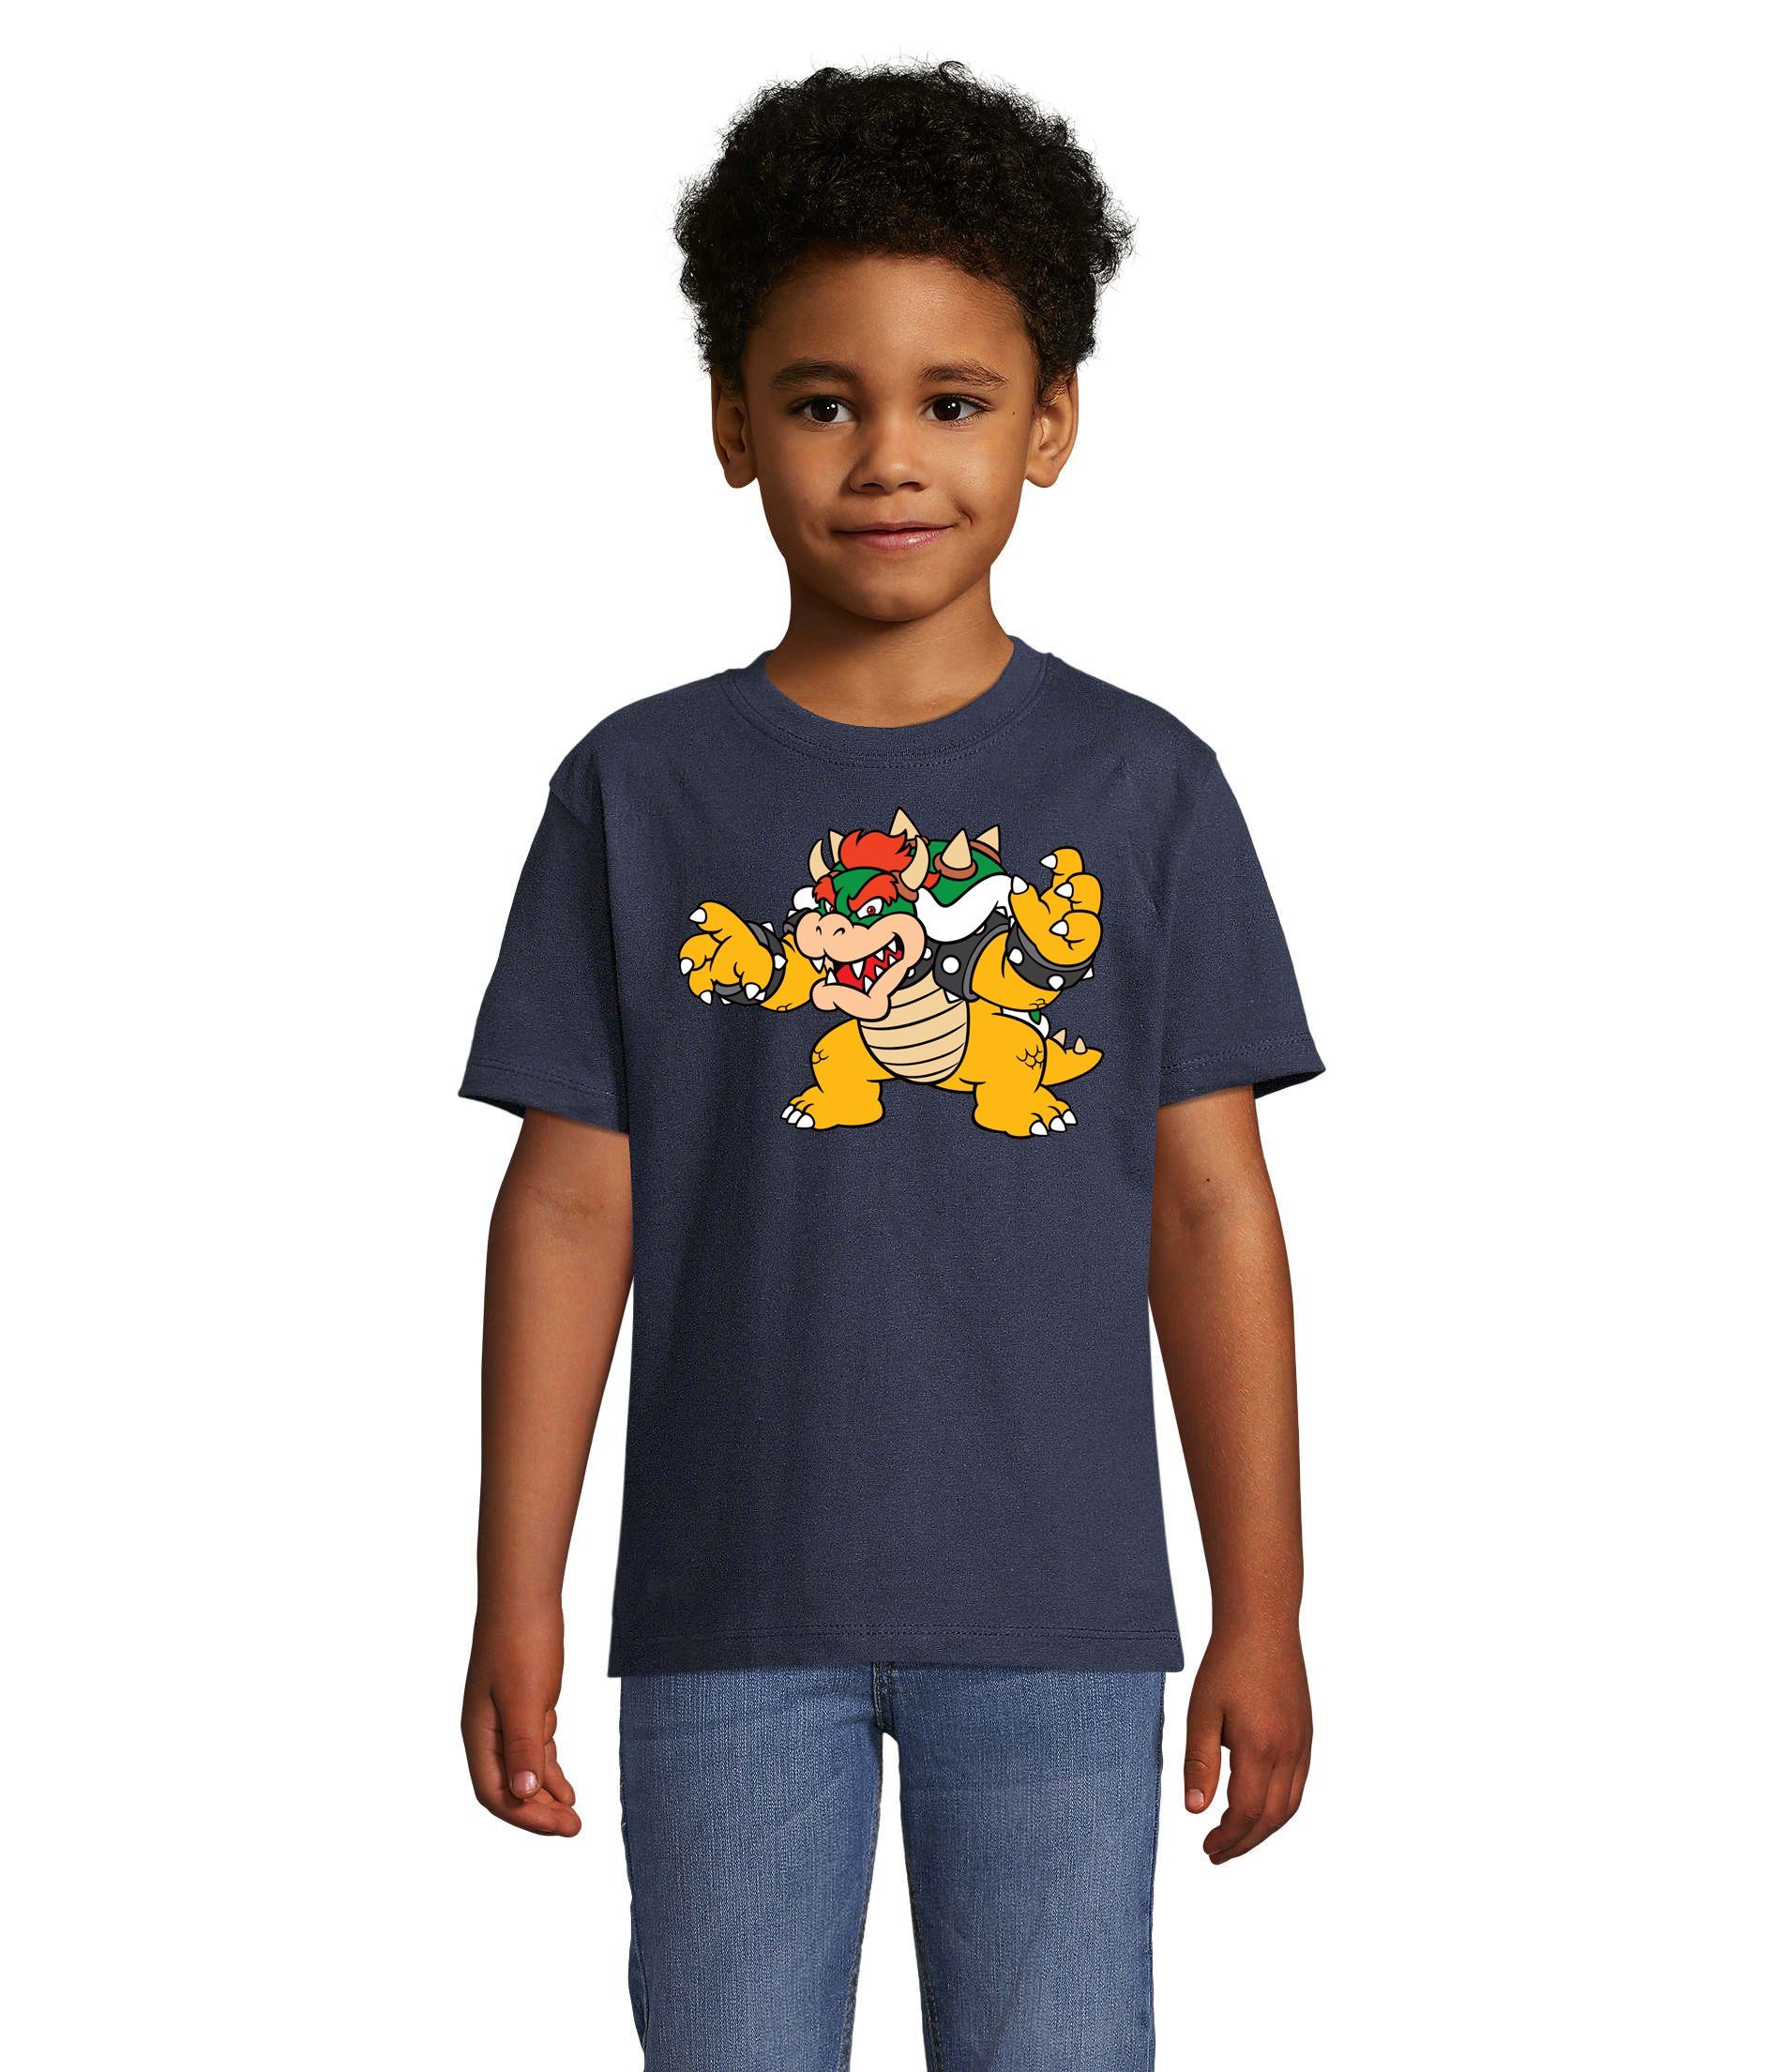 Blondie & Brownie T-Shirt Kinder Bowser Nintendo Mario Yoshi Luigi Game Gamer Konsole Navyblau